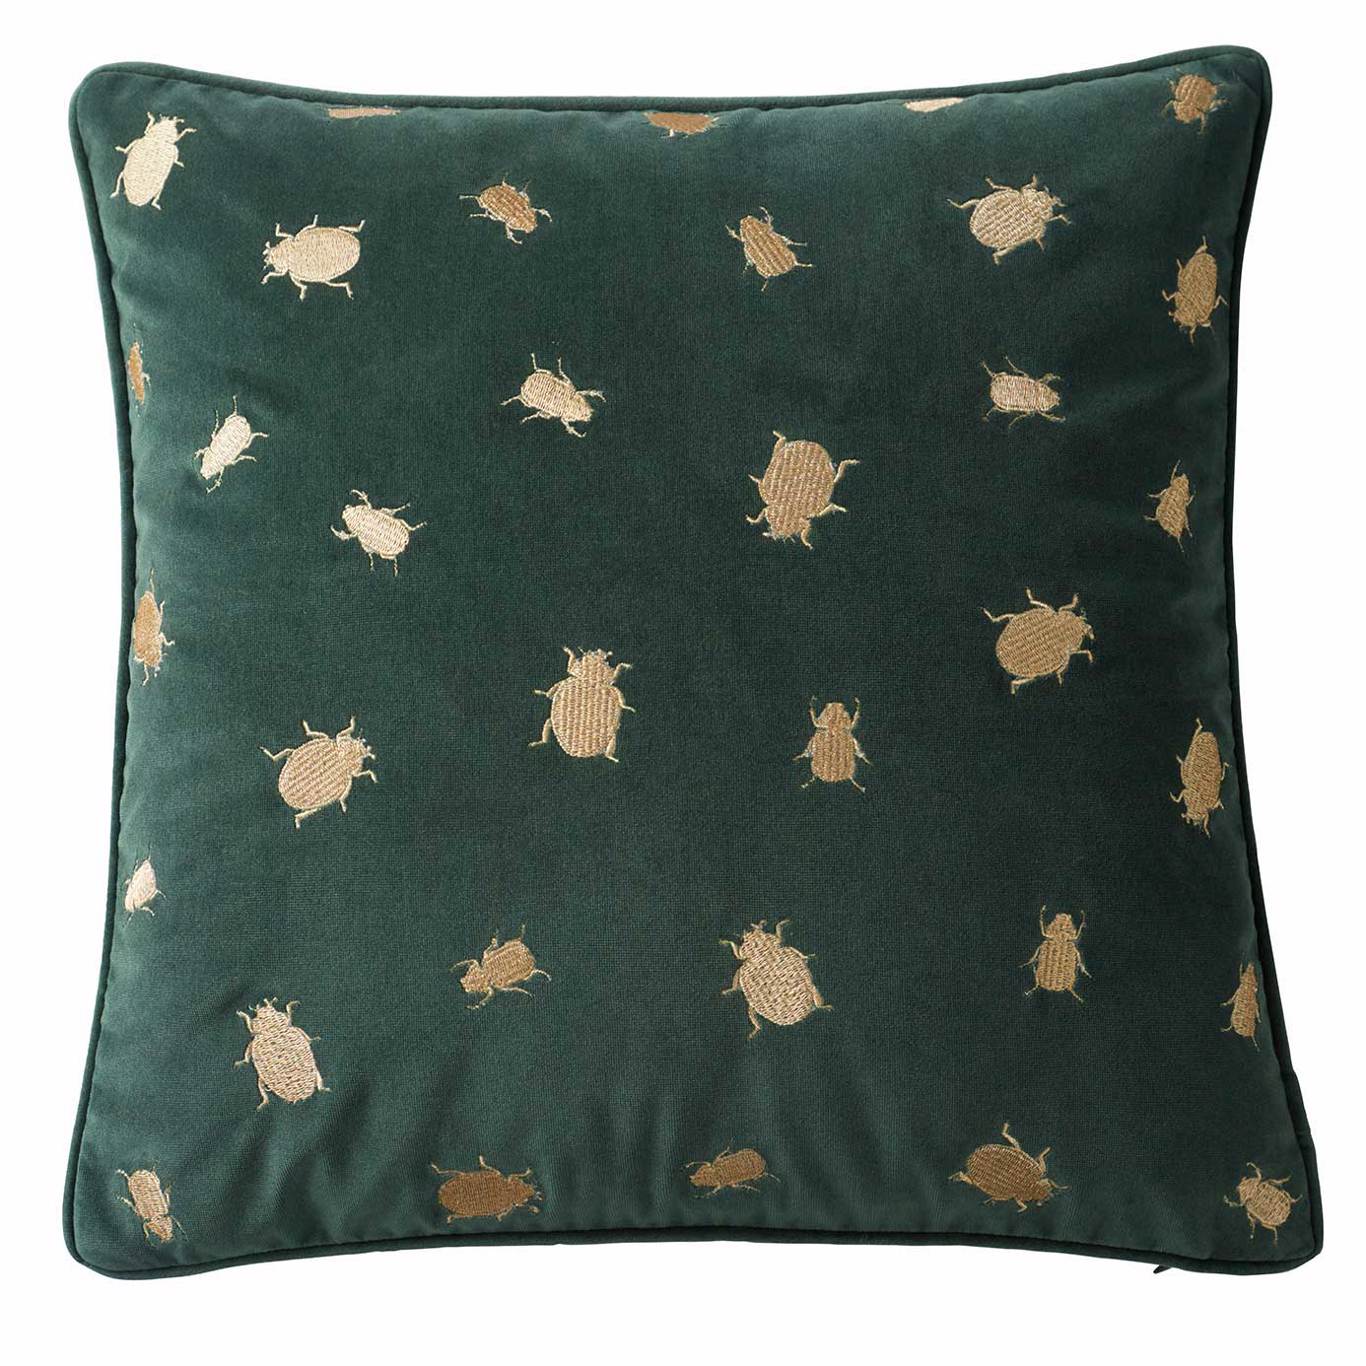 Firefly Emerald Cushion